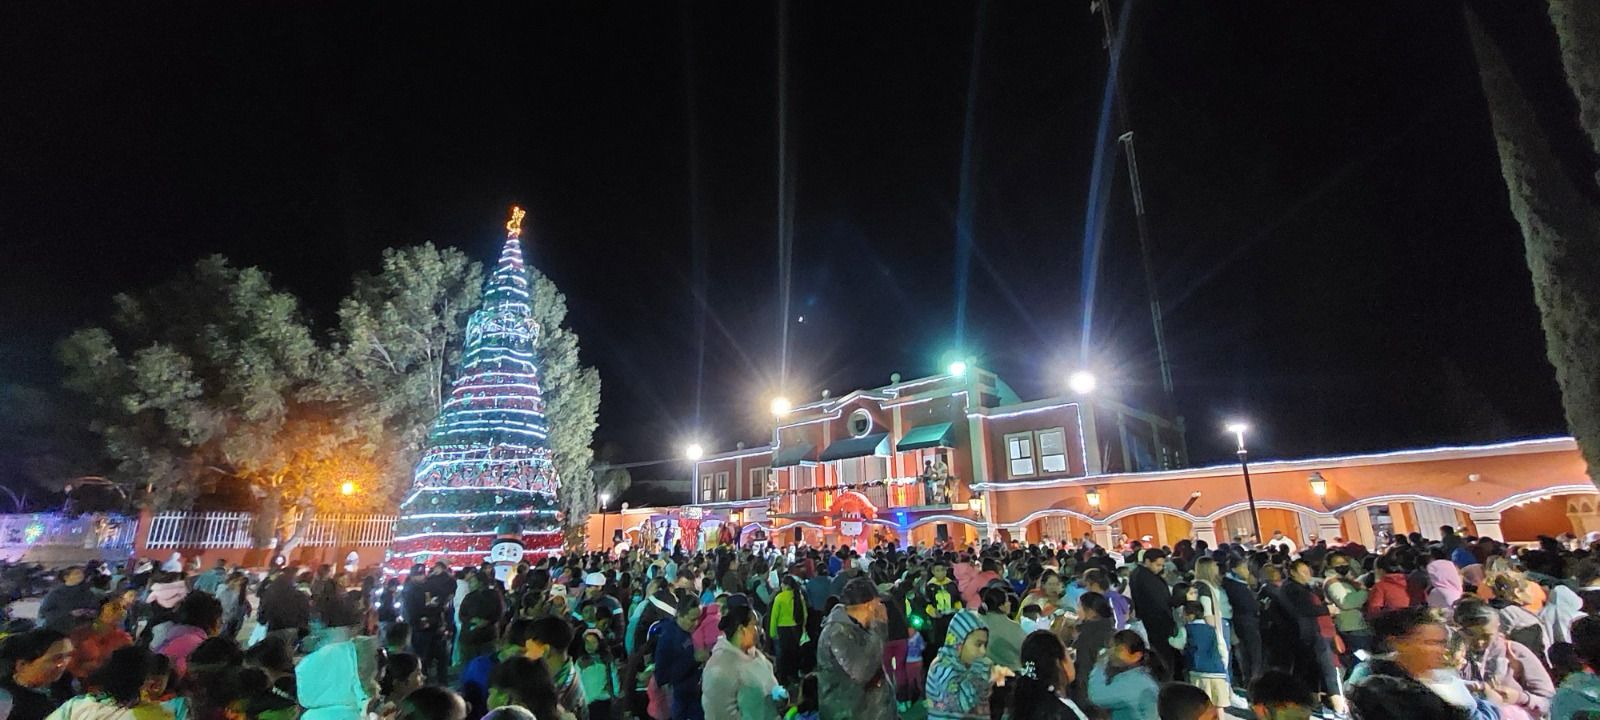 Más de mil 500 niños y niñas disfrutaron de los regalos y juguetes en esta gran celebración navideña.